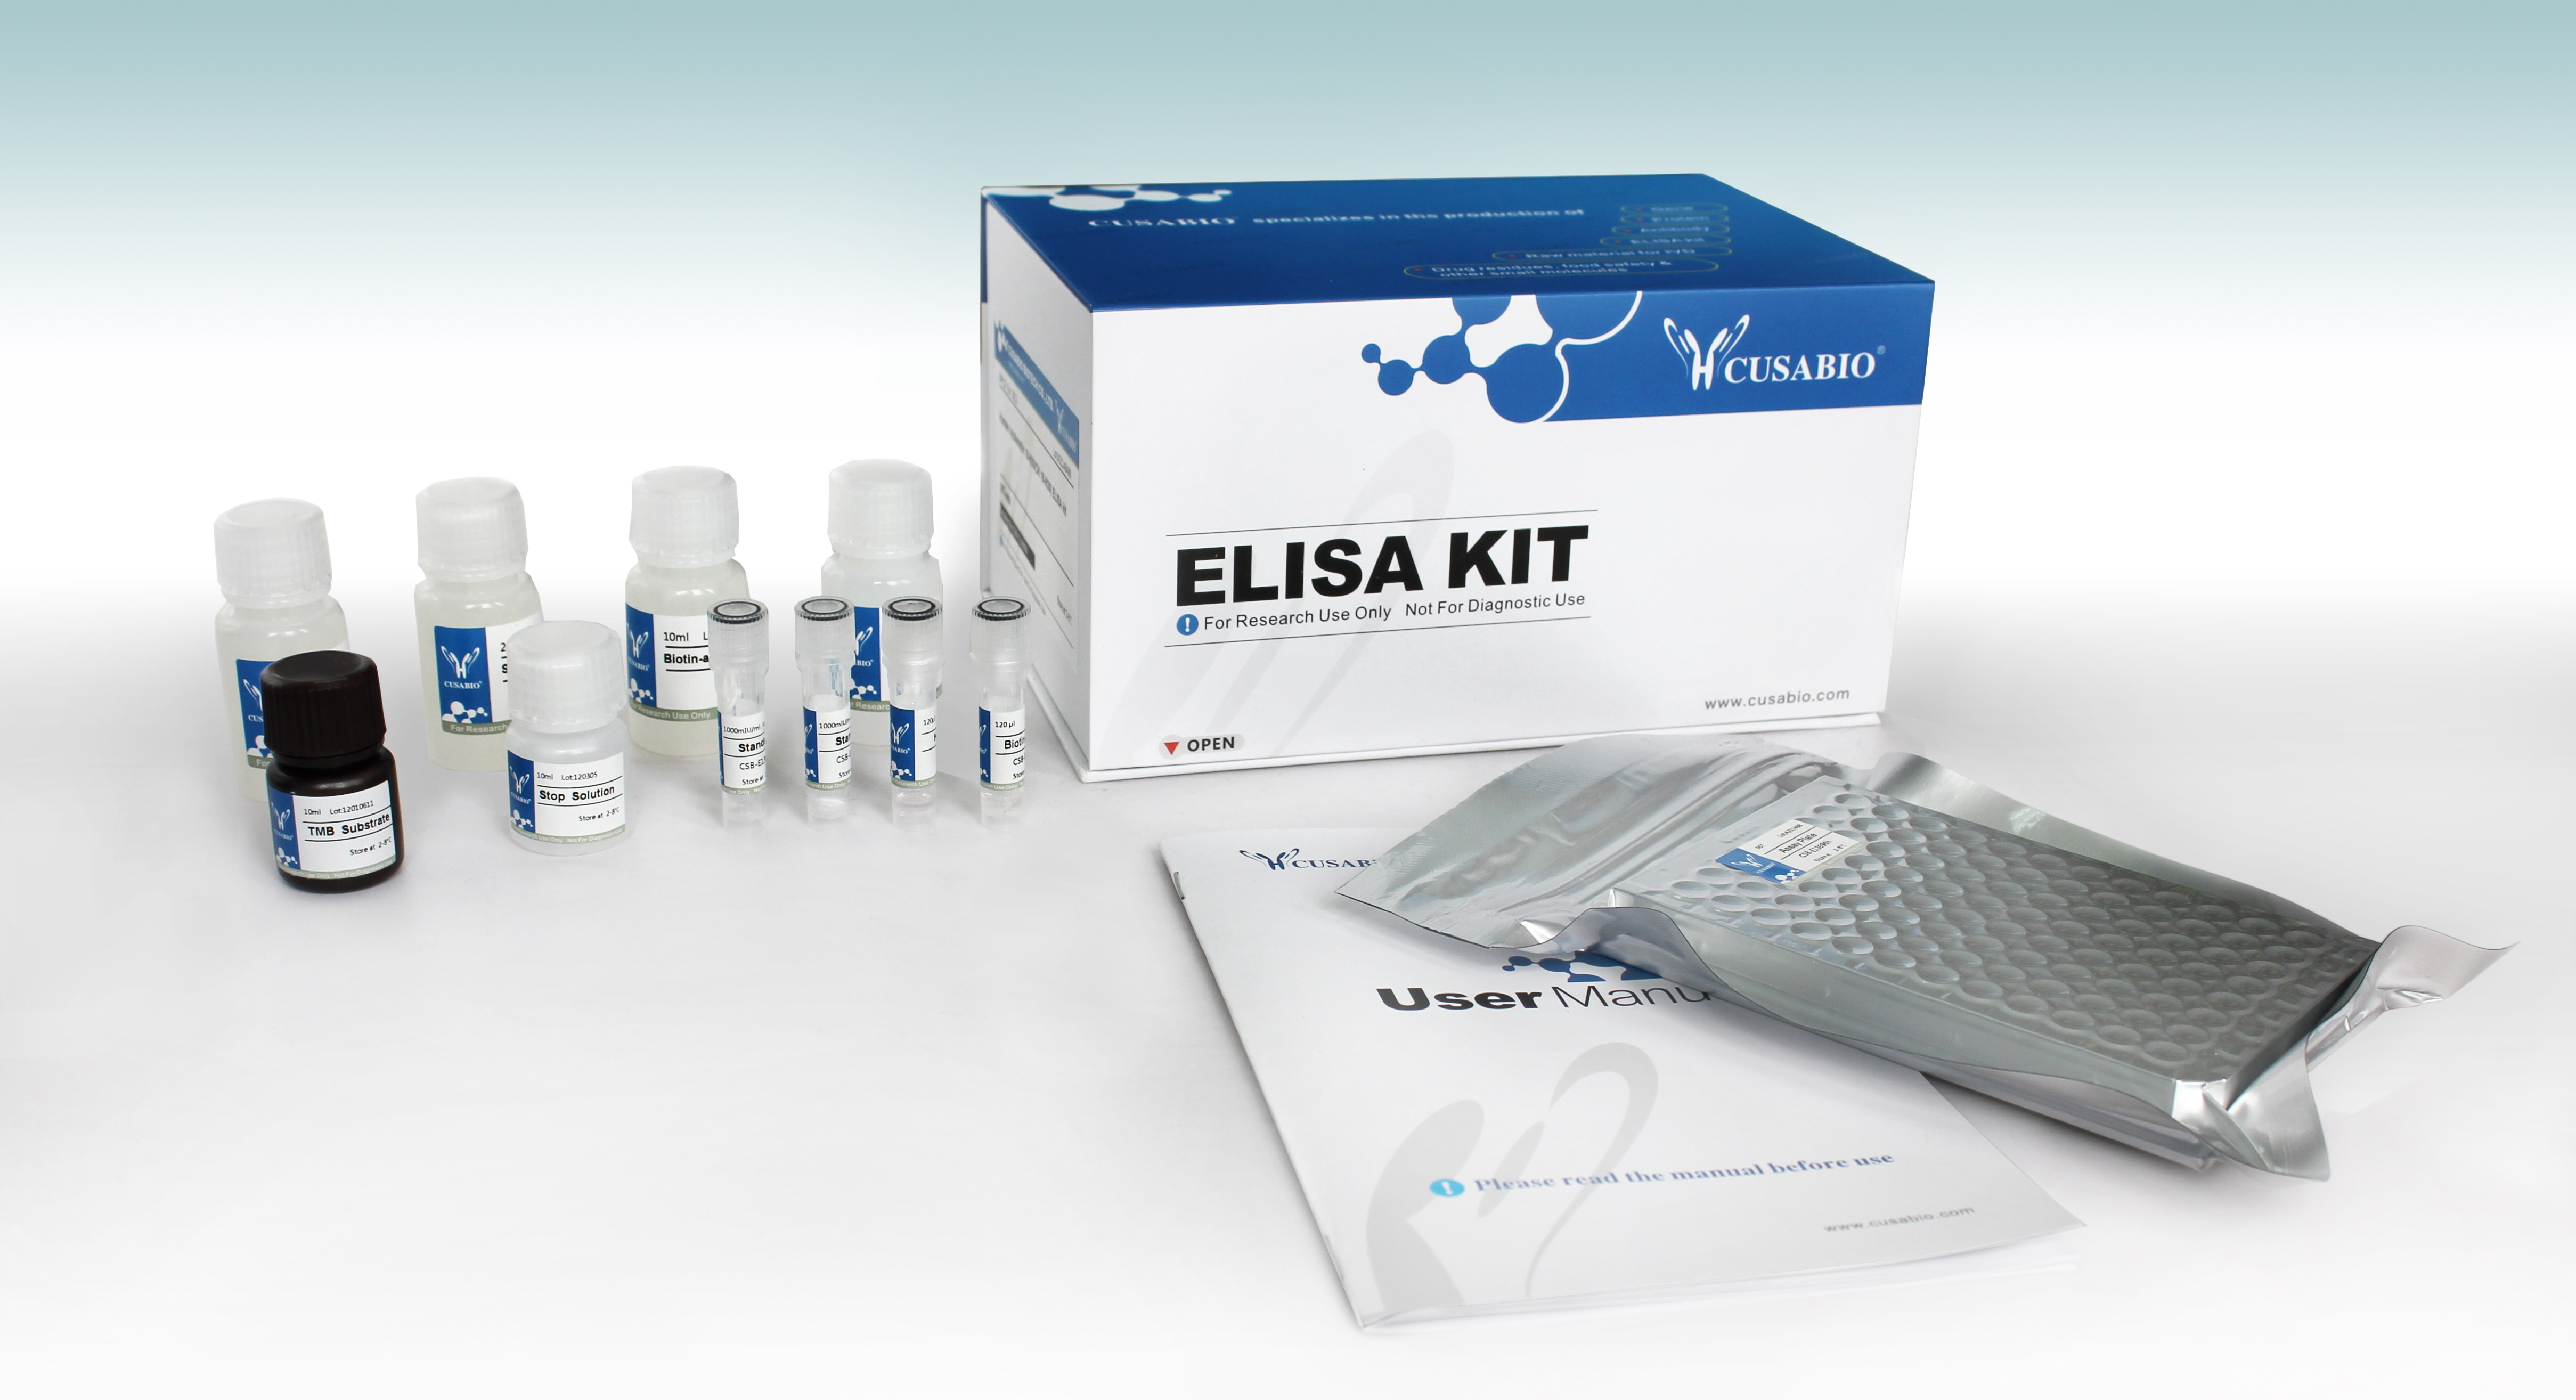 脱氧雪腐镰刀菌烯醇(DON，即呕吐毒素)酶联免疫试剂盒 Deoxynivalenol (DON) ELISA Kit